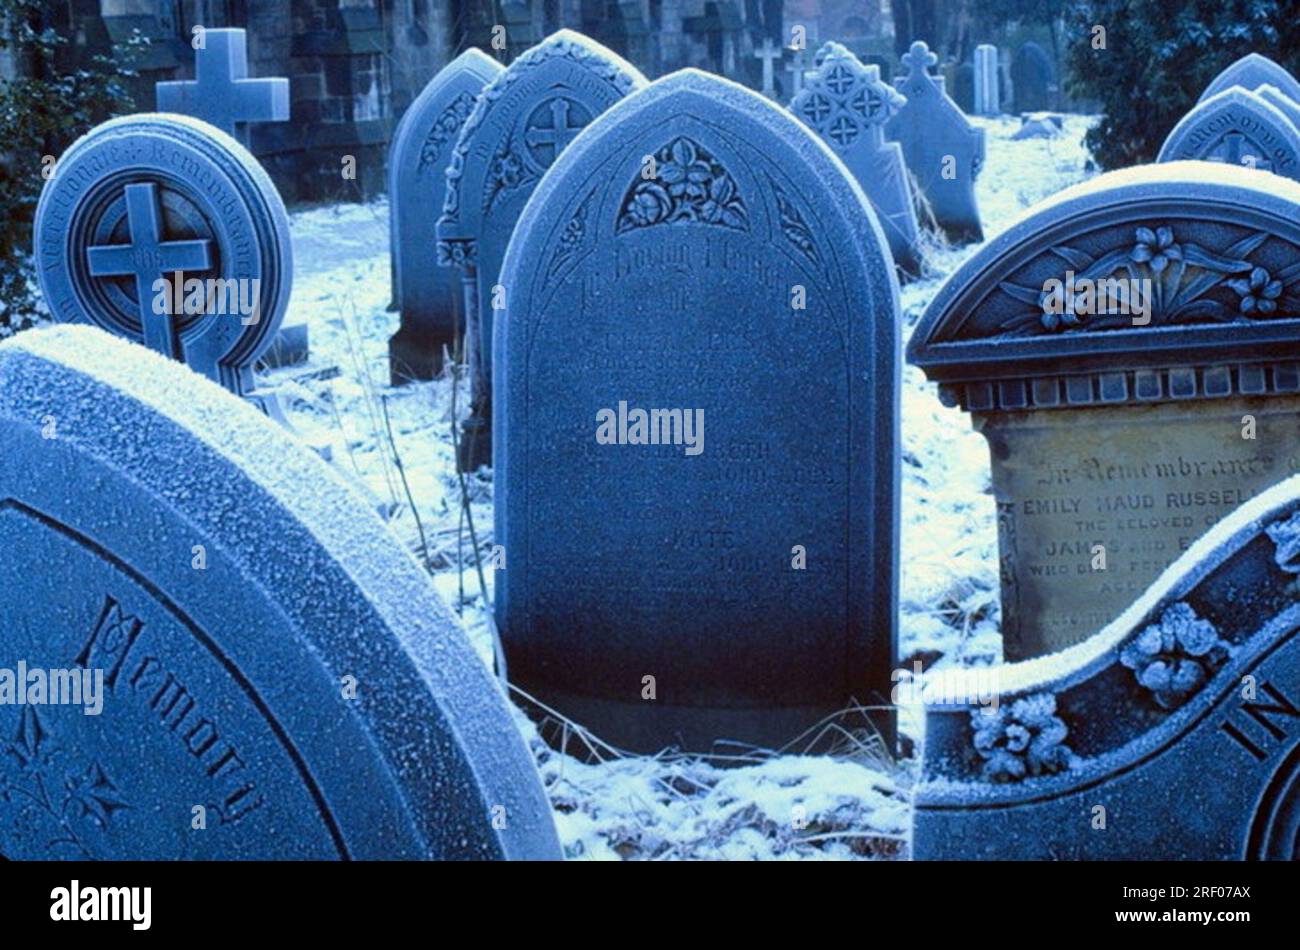 Imagen de archivo, tomada a principios de 1980, de lápidas o tumbas en un patio de la iglesia, en un día nevado en invierno, en Manchester, Inglaterra, Reino Unido, tungsteno película luz del día azul fundido, Foto de stock